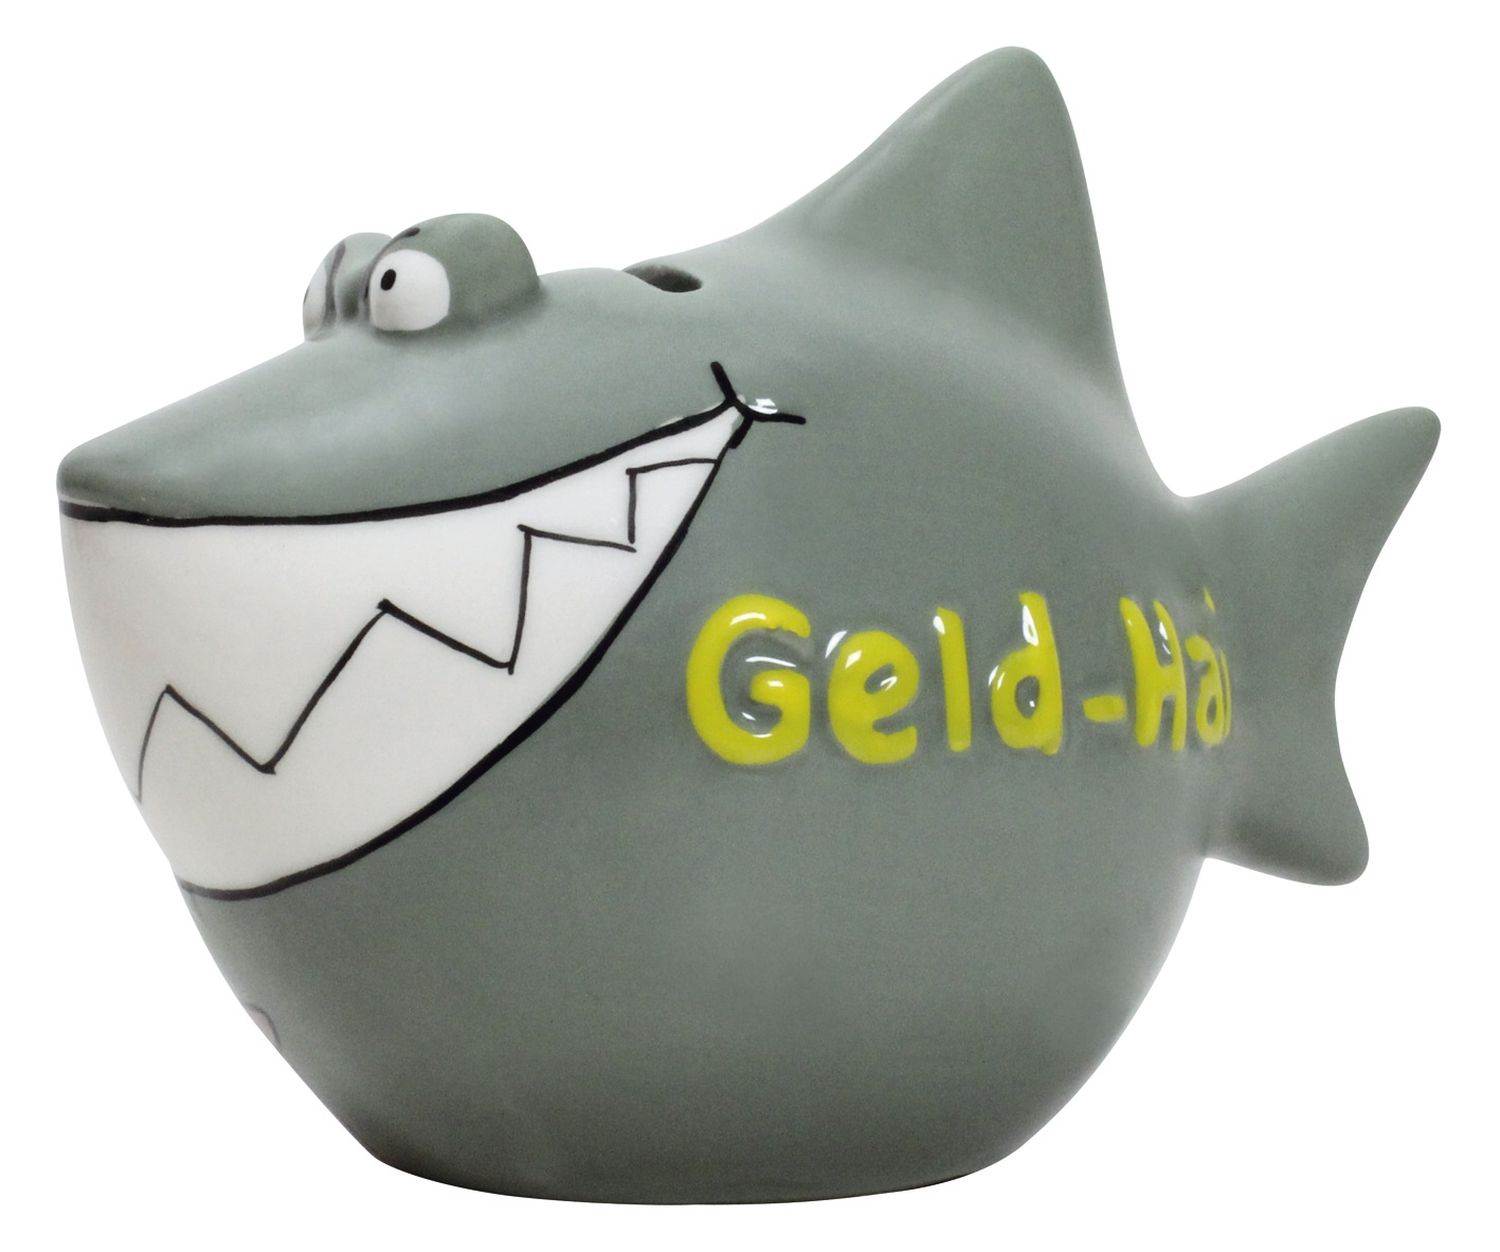 Spardose Hai "Geld-Hai" - Keramik, klein